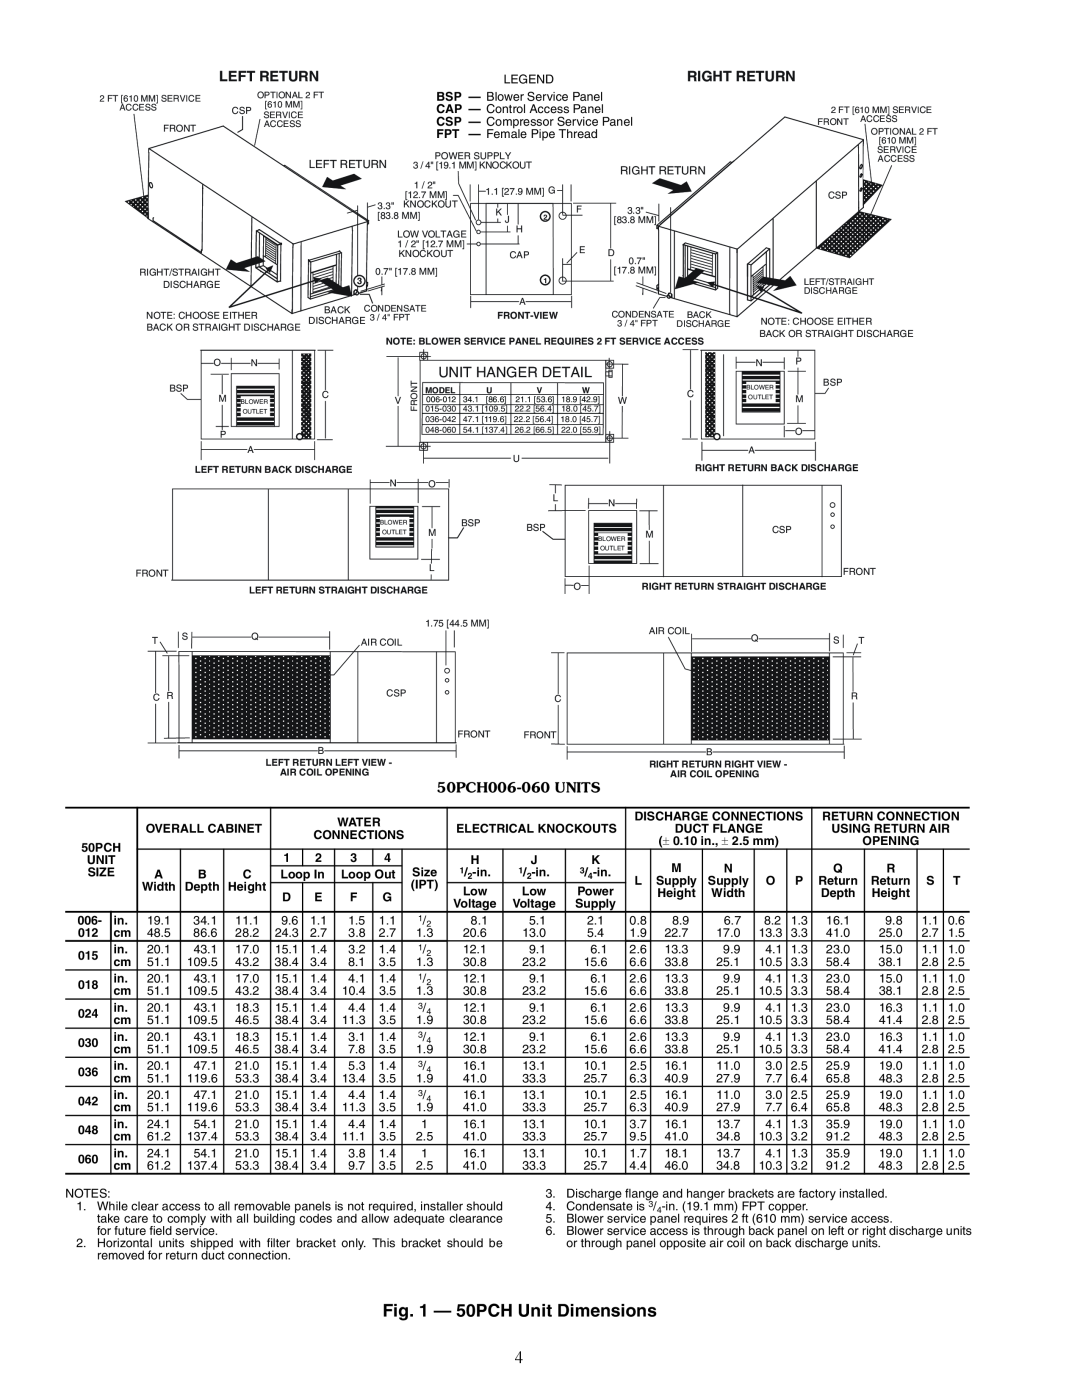 Carrier specifications a50-8695, 50PCH Unit Dimensions, Unit Hanger Detail, 50PCH006-060UNITS 